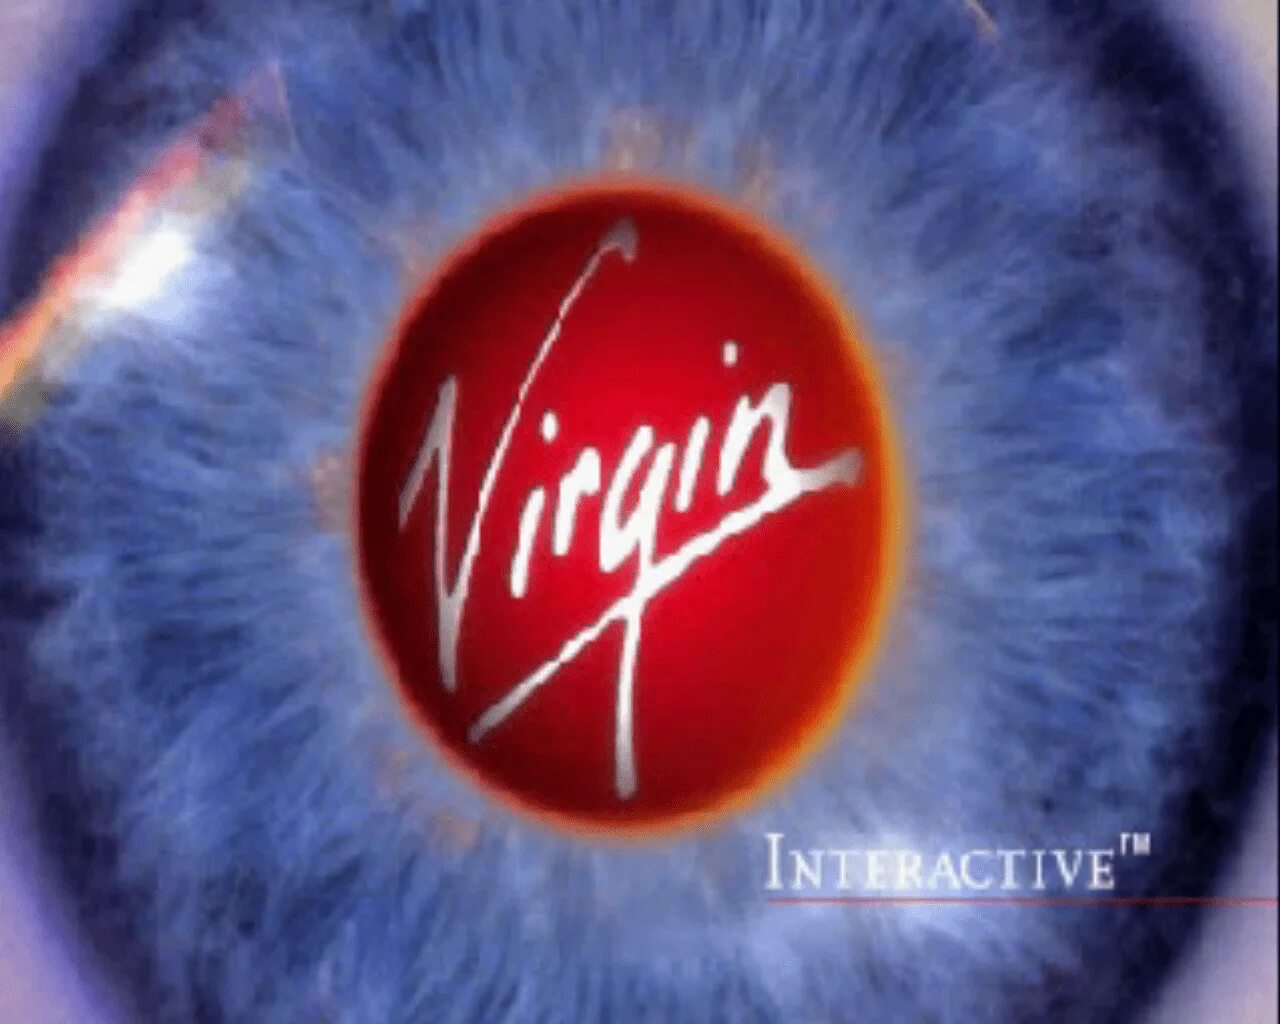 Virgin interactive logo. Virgin interactive проекты. Universal interactive Studios logo 1996. Virgin interactive